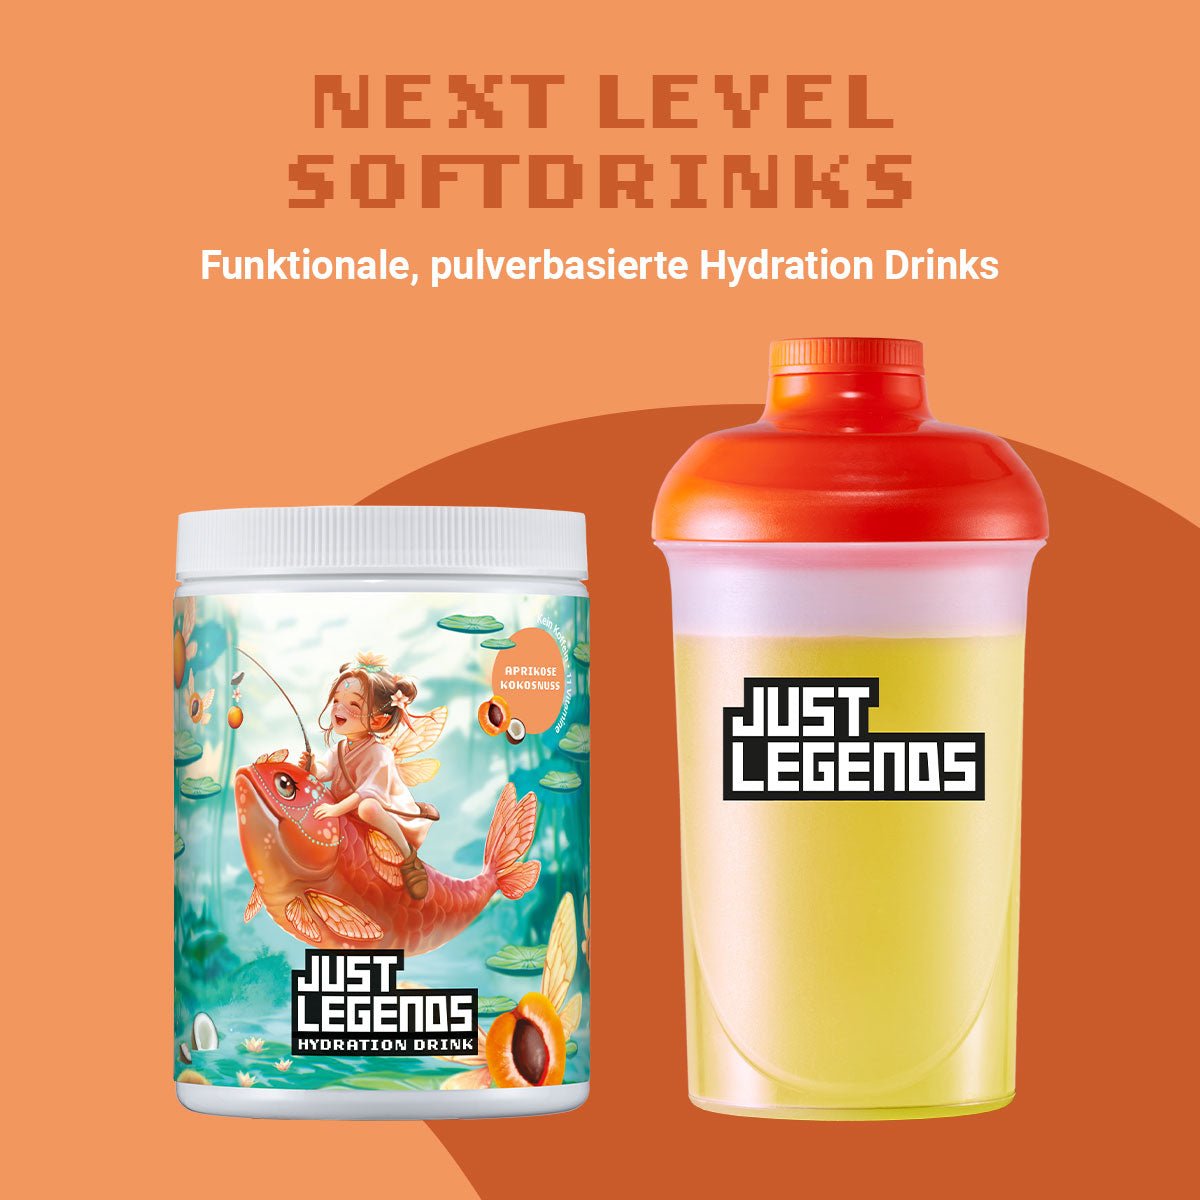 Just Legends Hydration Drink Apricot Coconut | Funktionaler, veganer Hydration Drink auf Pulverbasis ohne Zucker, mit wenig Kalorien, vielen Vitaminen und natürlichen Aromen.